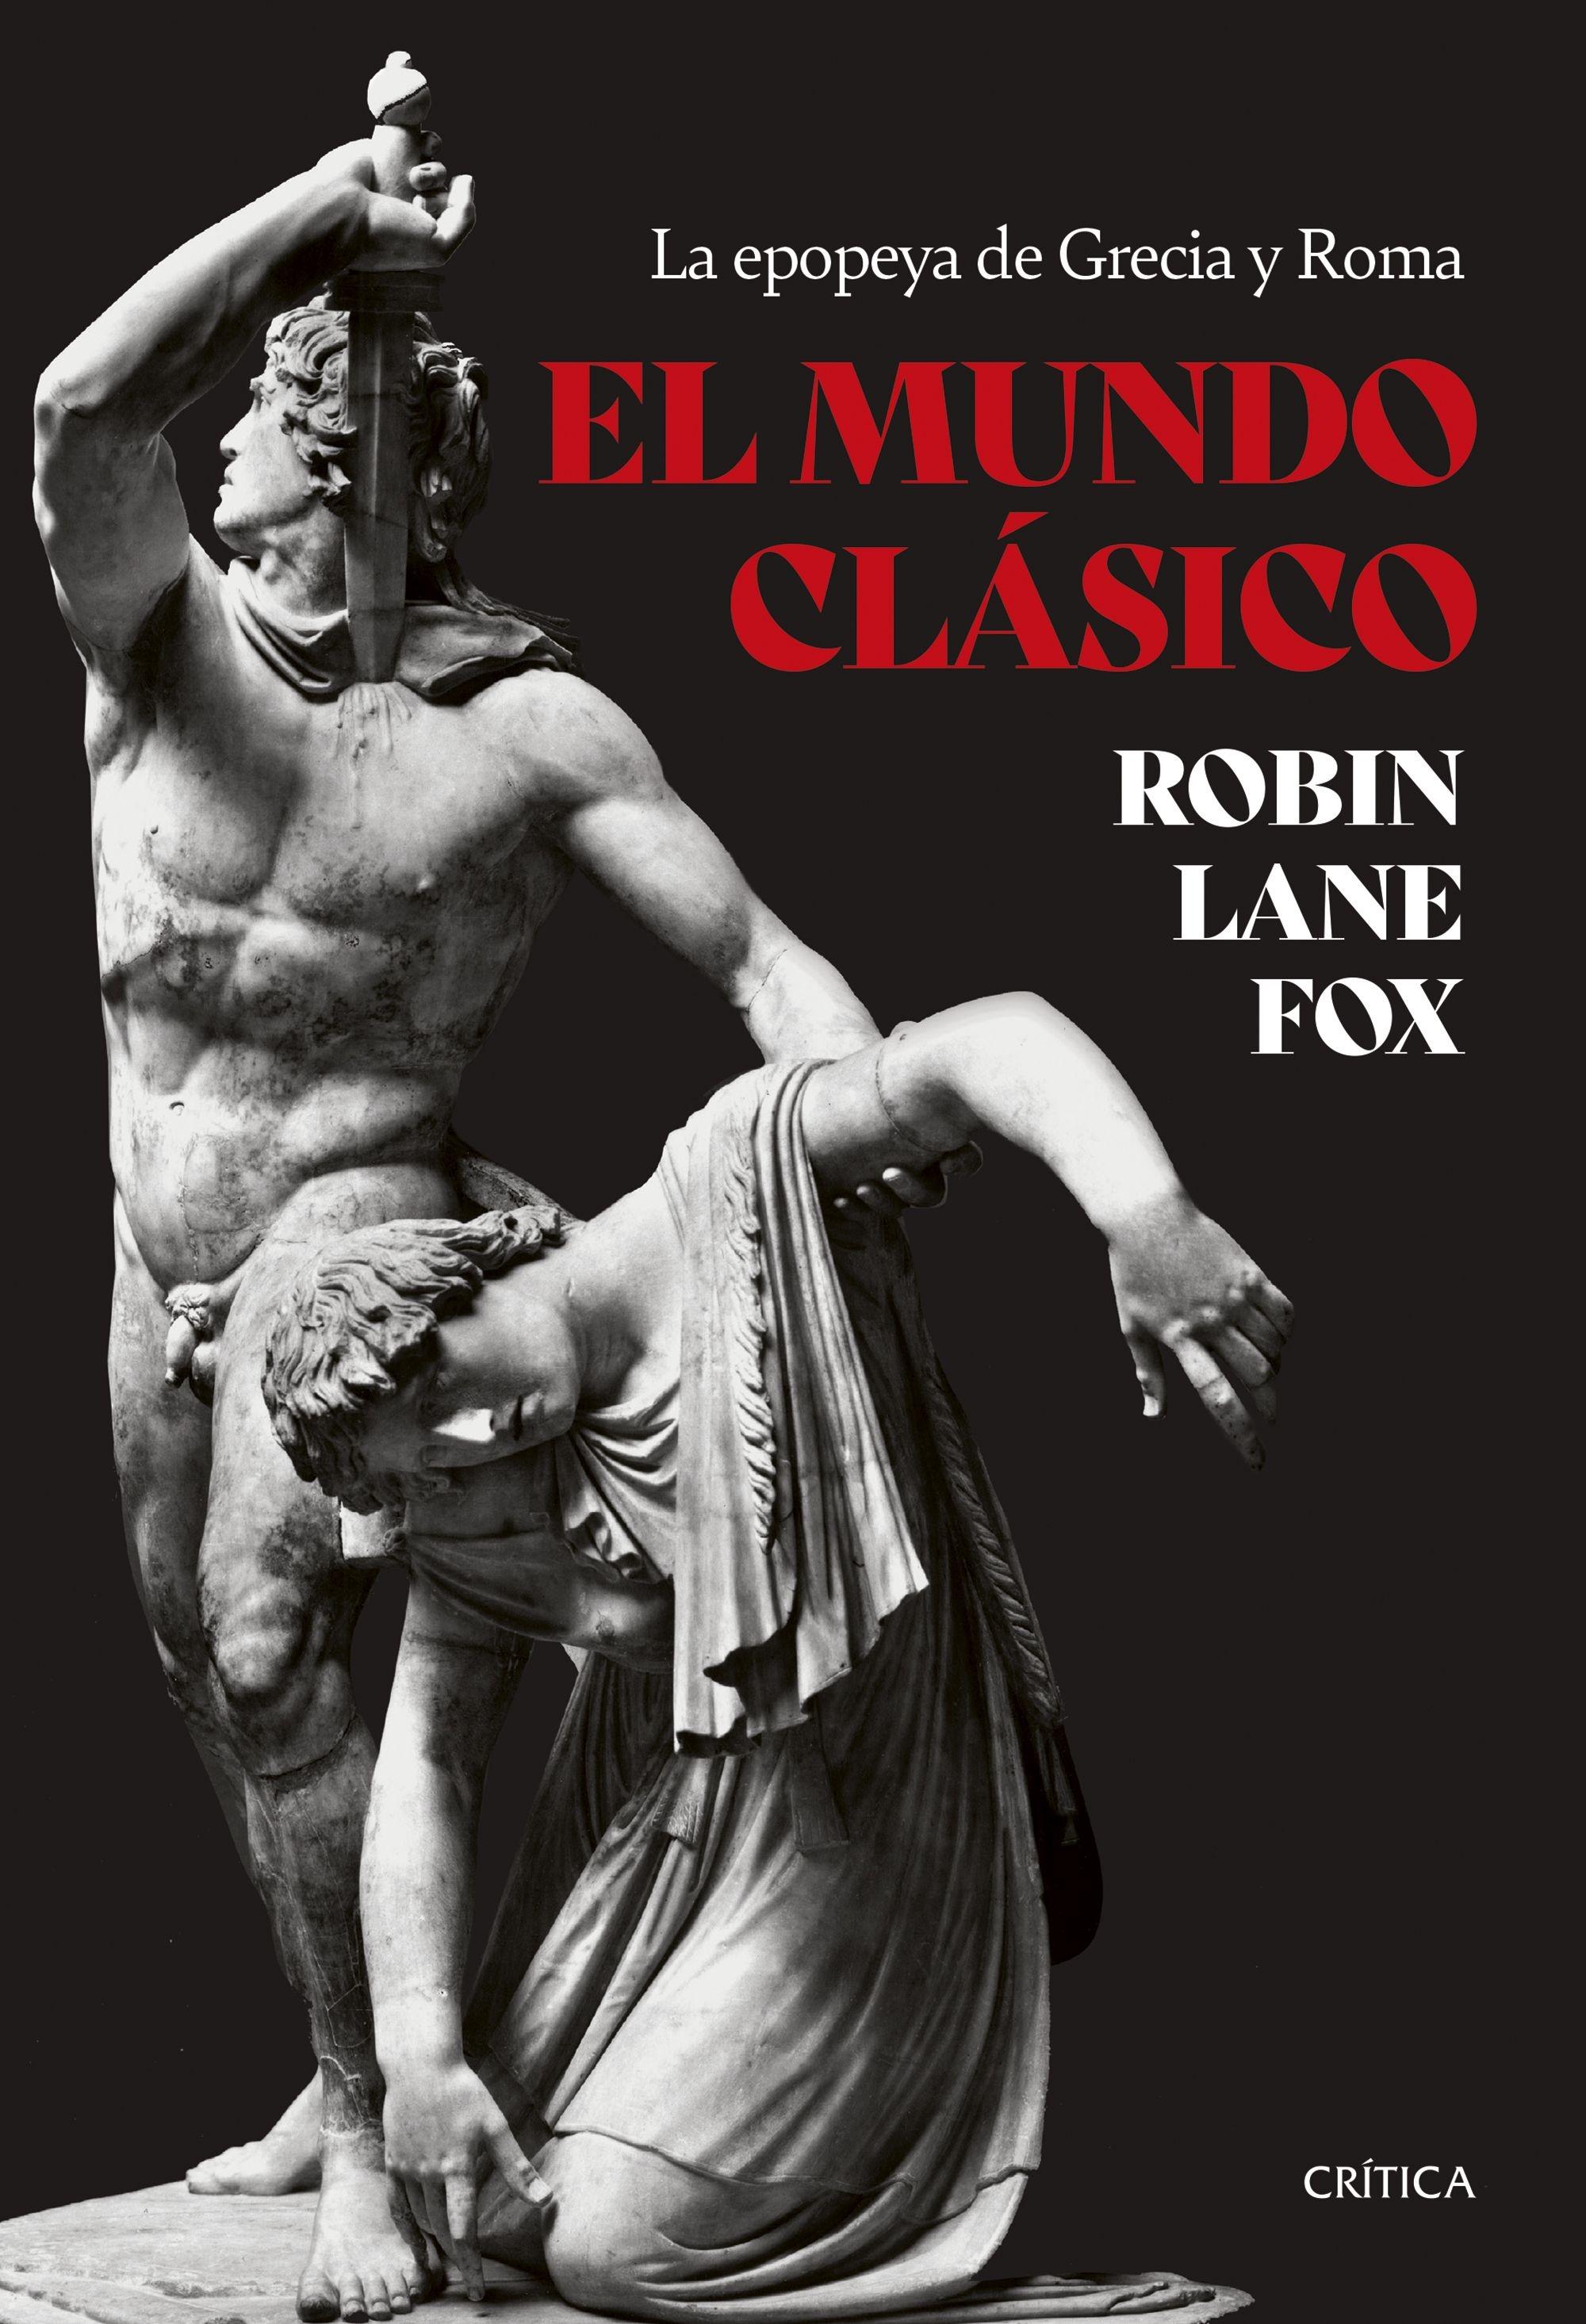 El Mundo Clásico "La Epopeya de Grecia y Roma"